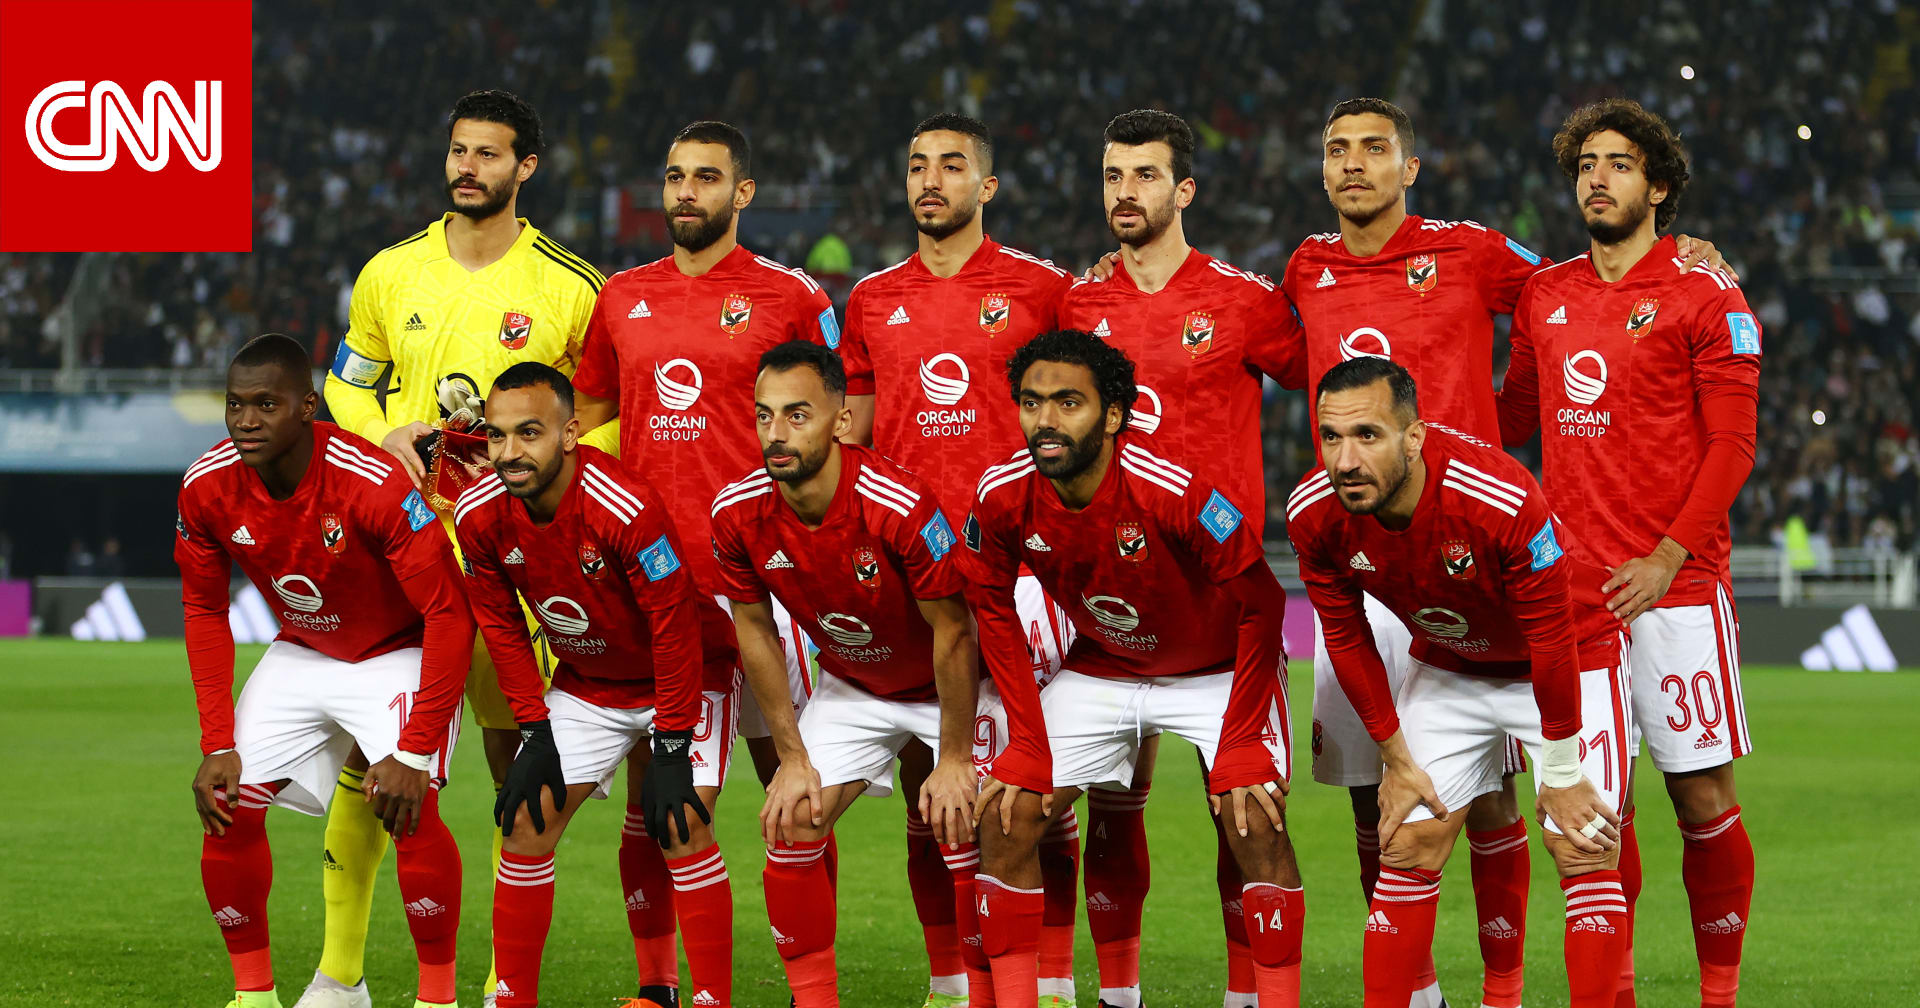 هل يشعر لاعبو الأهلي المصري بـ"حالة تشبع" من الألقاب؟ مارسيل كولر يرد